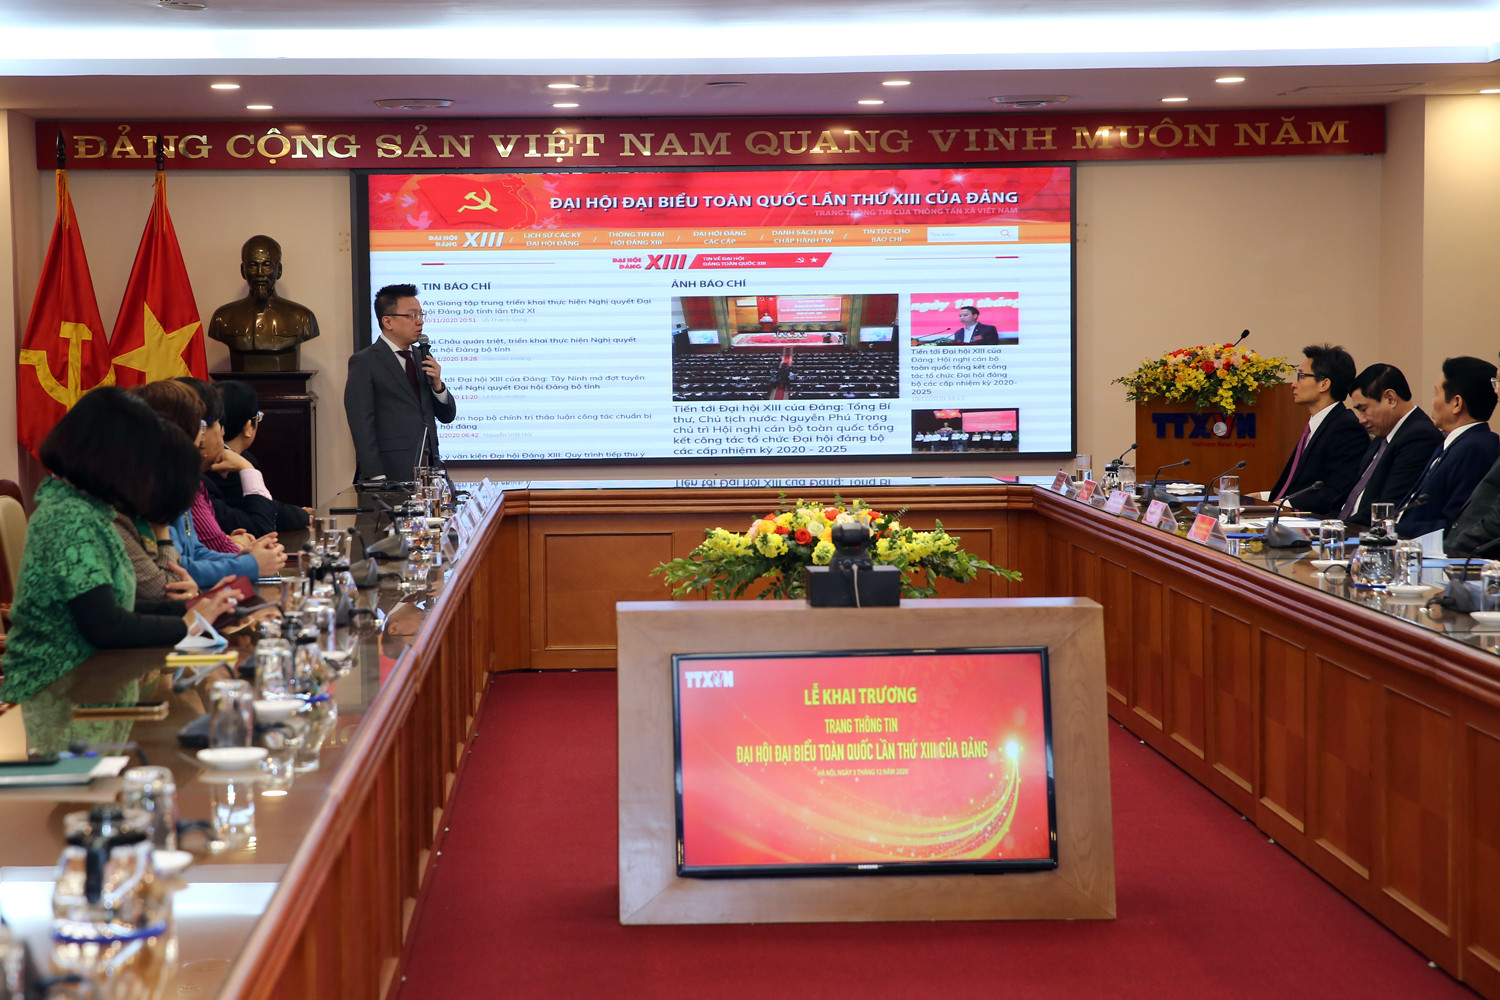 Ra mắt Trang thông tin về Đại hội lần thứ XIII của Đảng - Ảnh 2.